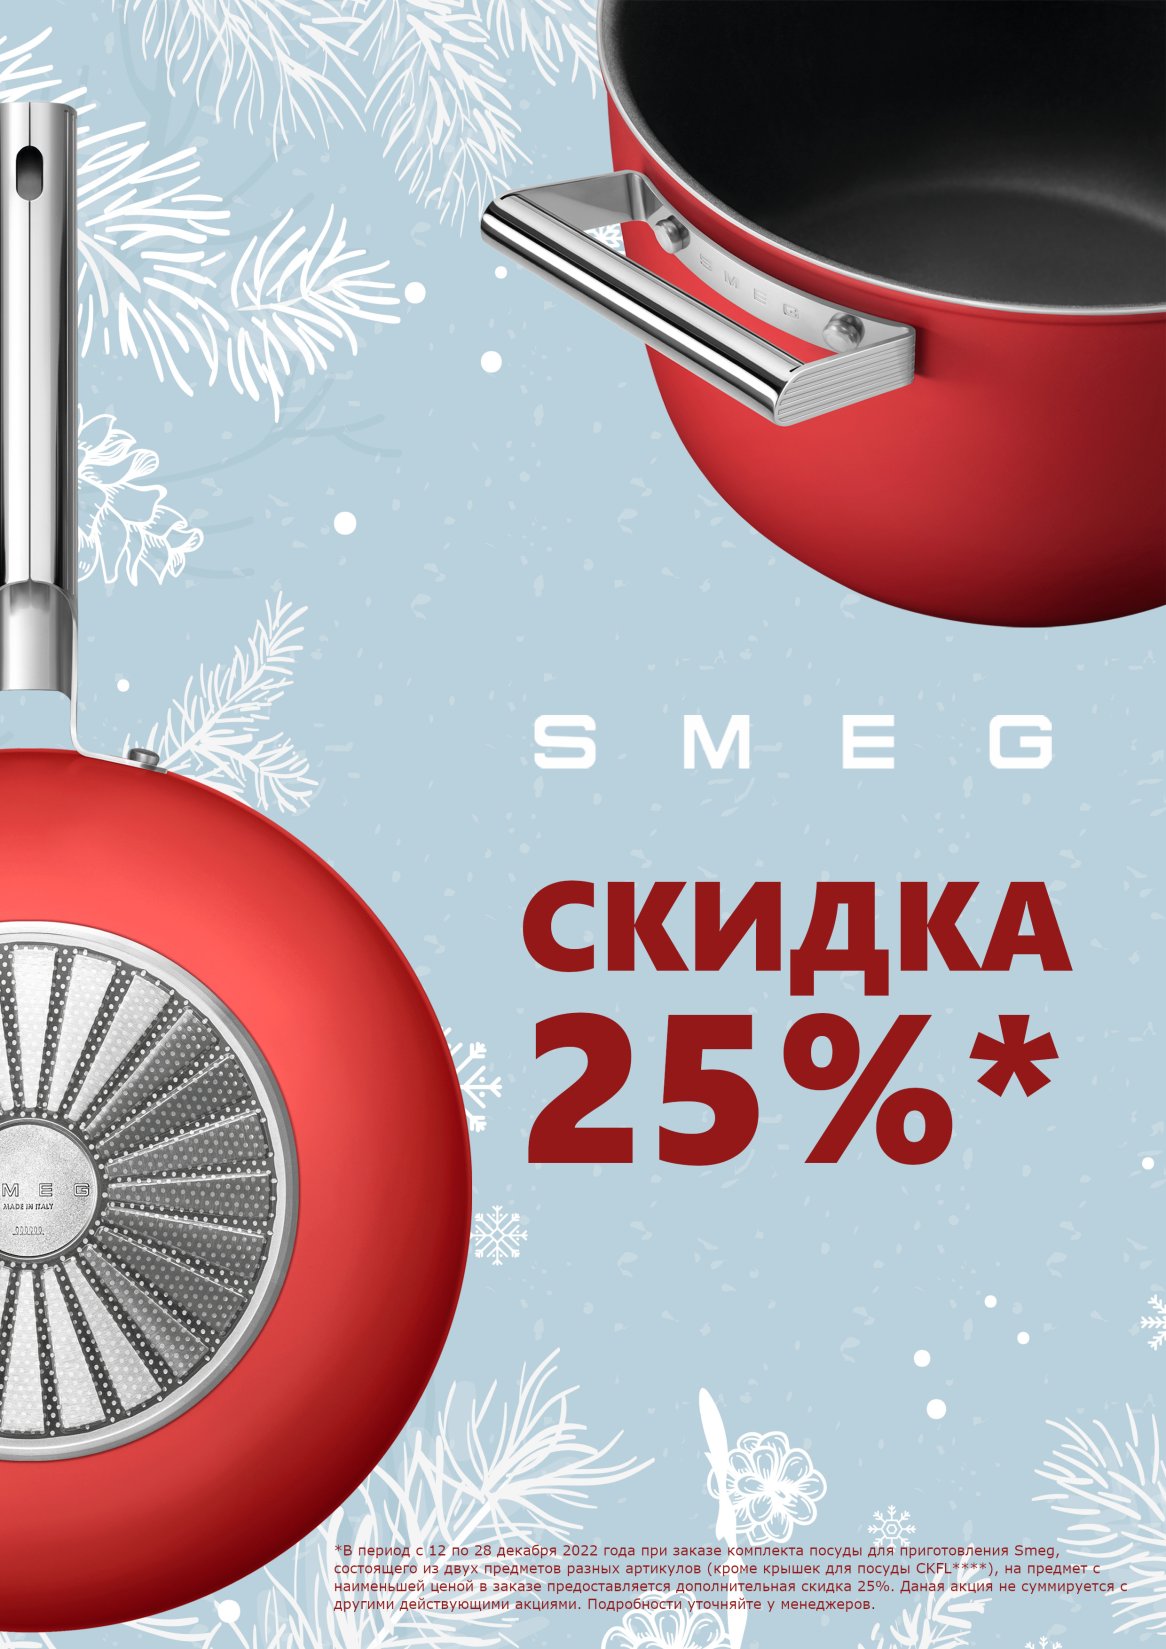 Акция SMEG: скидка 25% на посуду